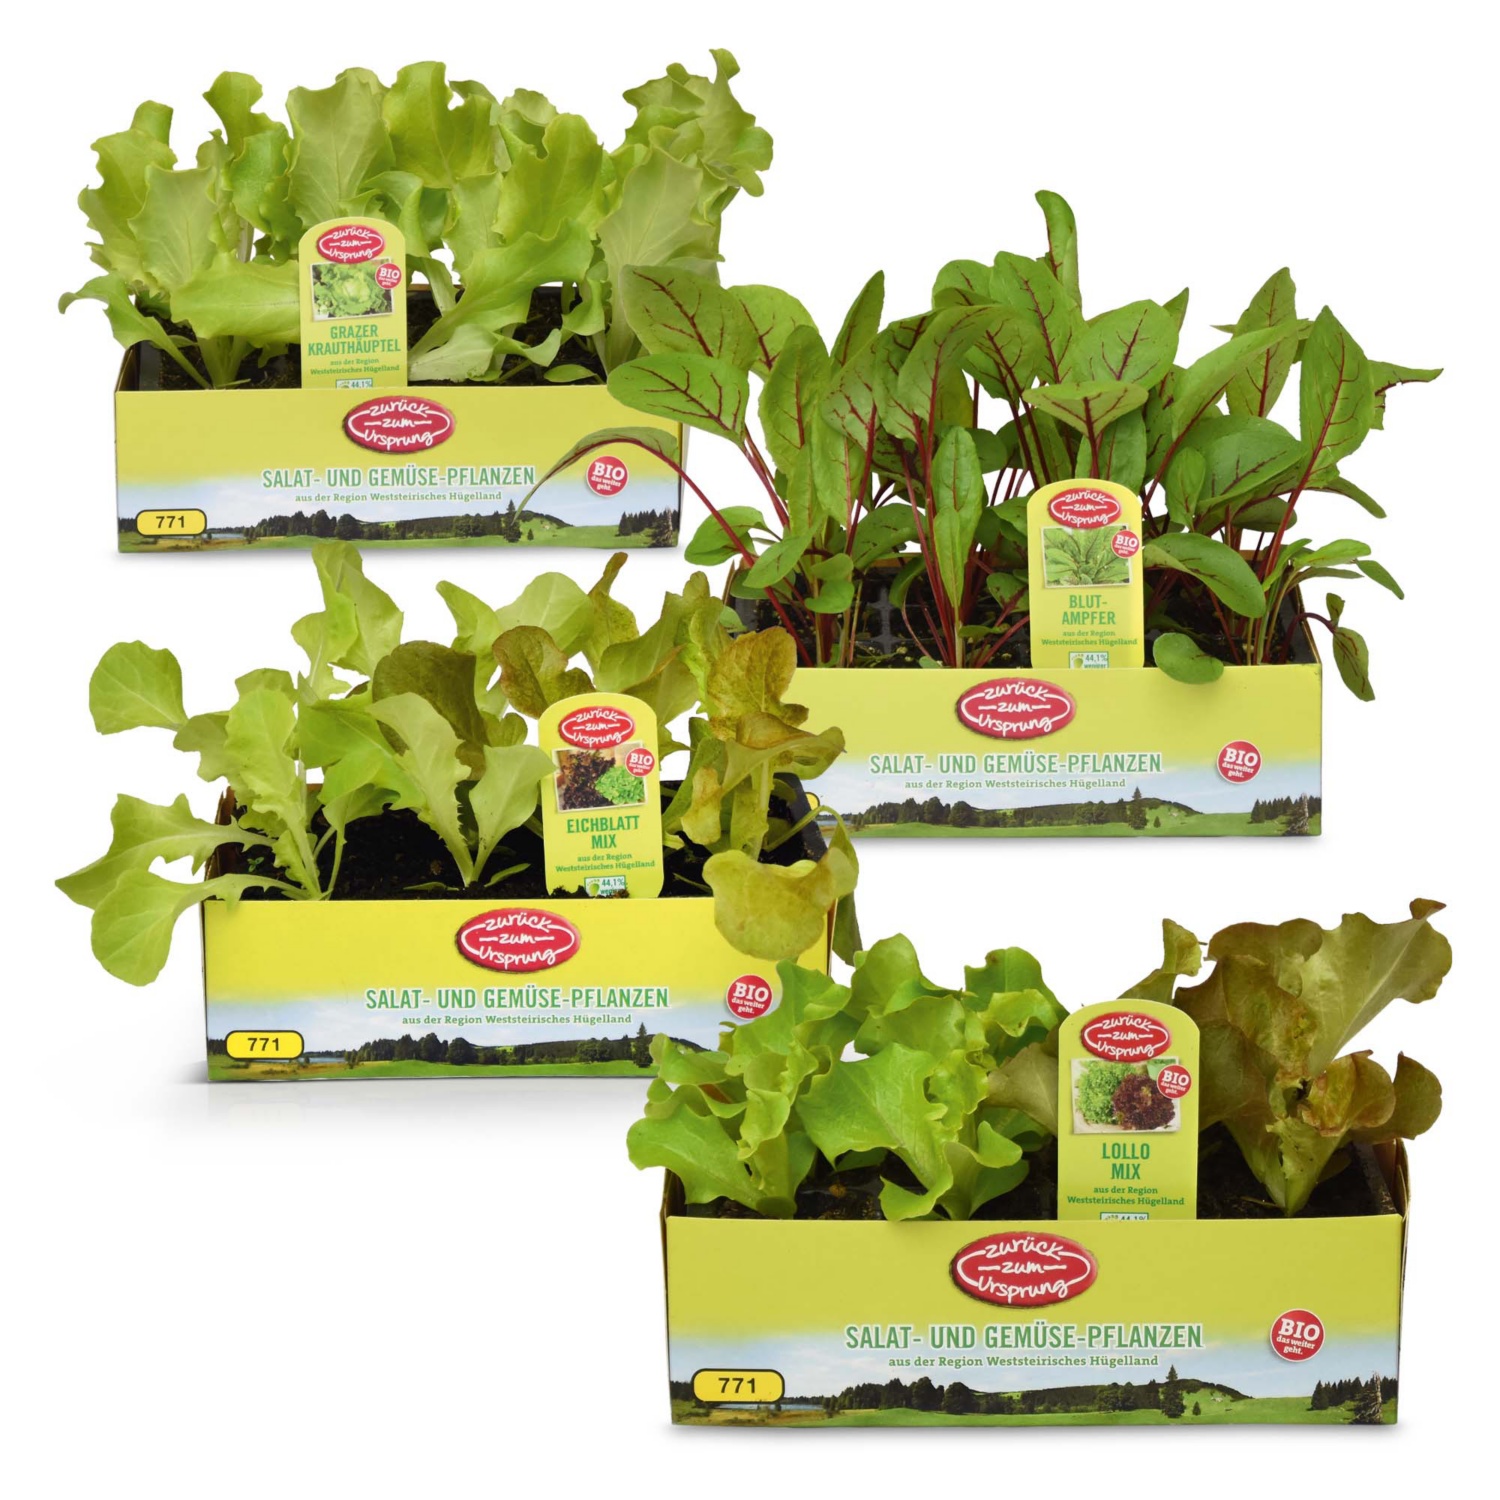 ZURÜCK ZUM URSPRUNG BIO-Salatpflanzen